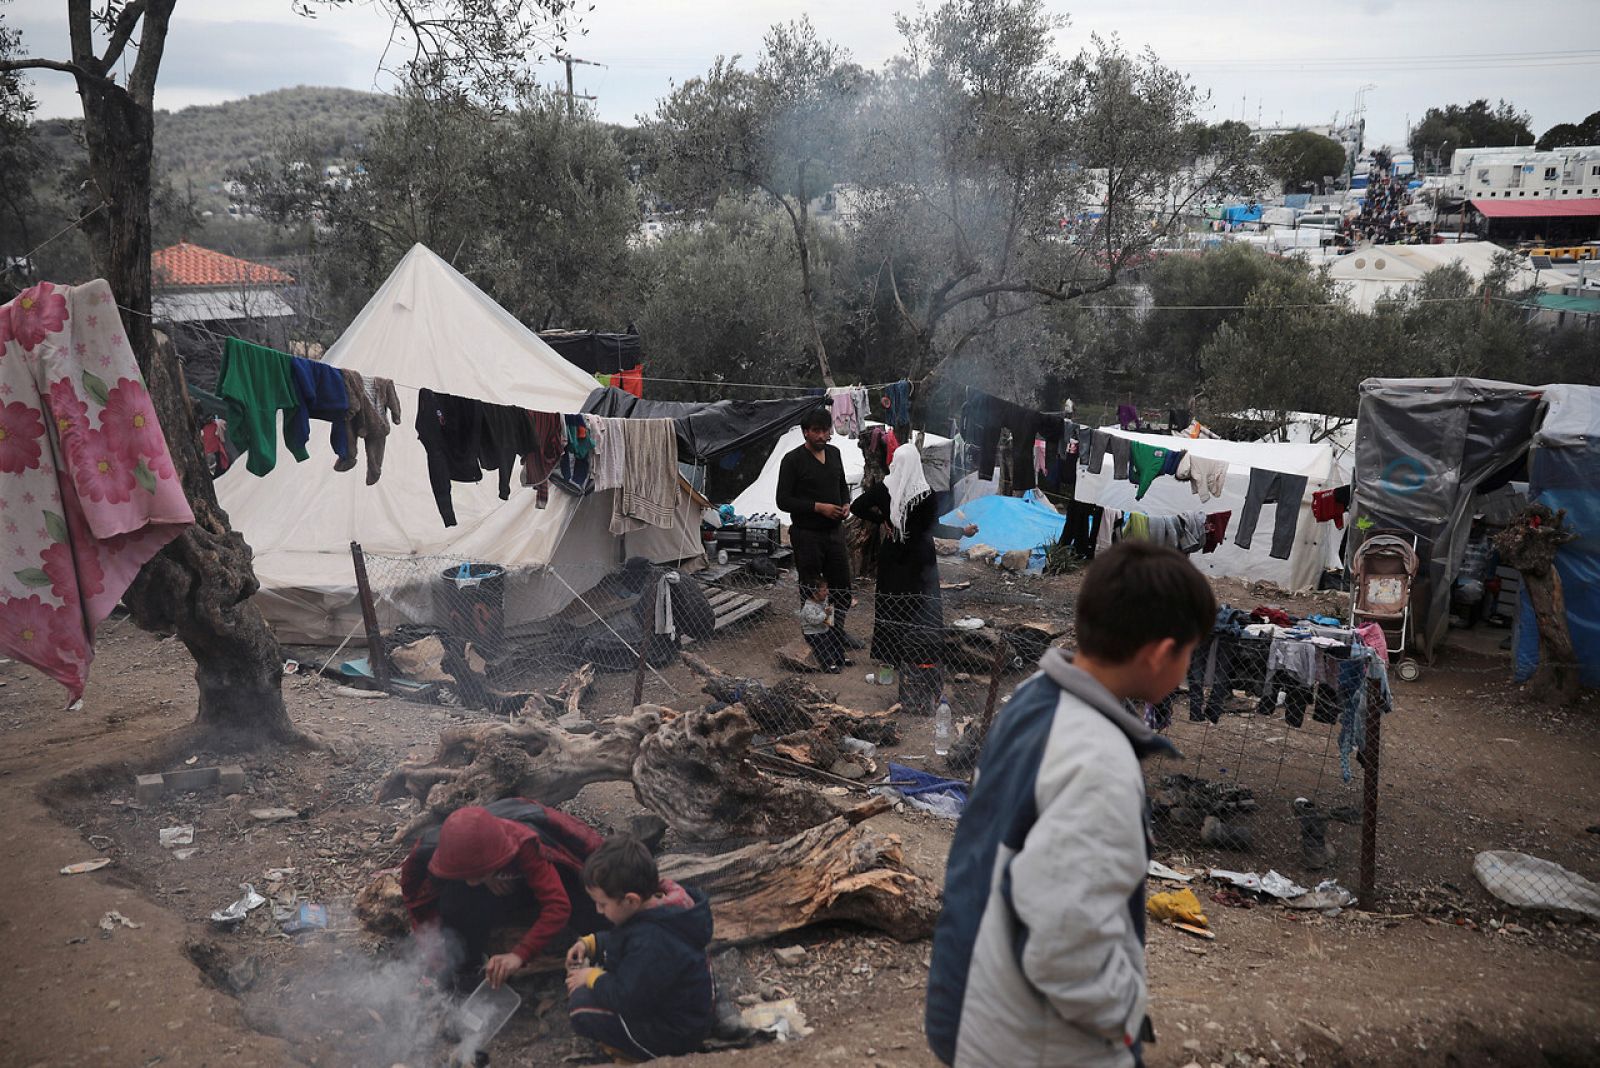 Alemania, dispuesta a acoger a 500 menores refugiados en la isla de Lesbos - RTVE.es